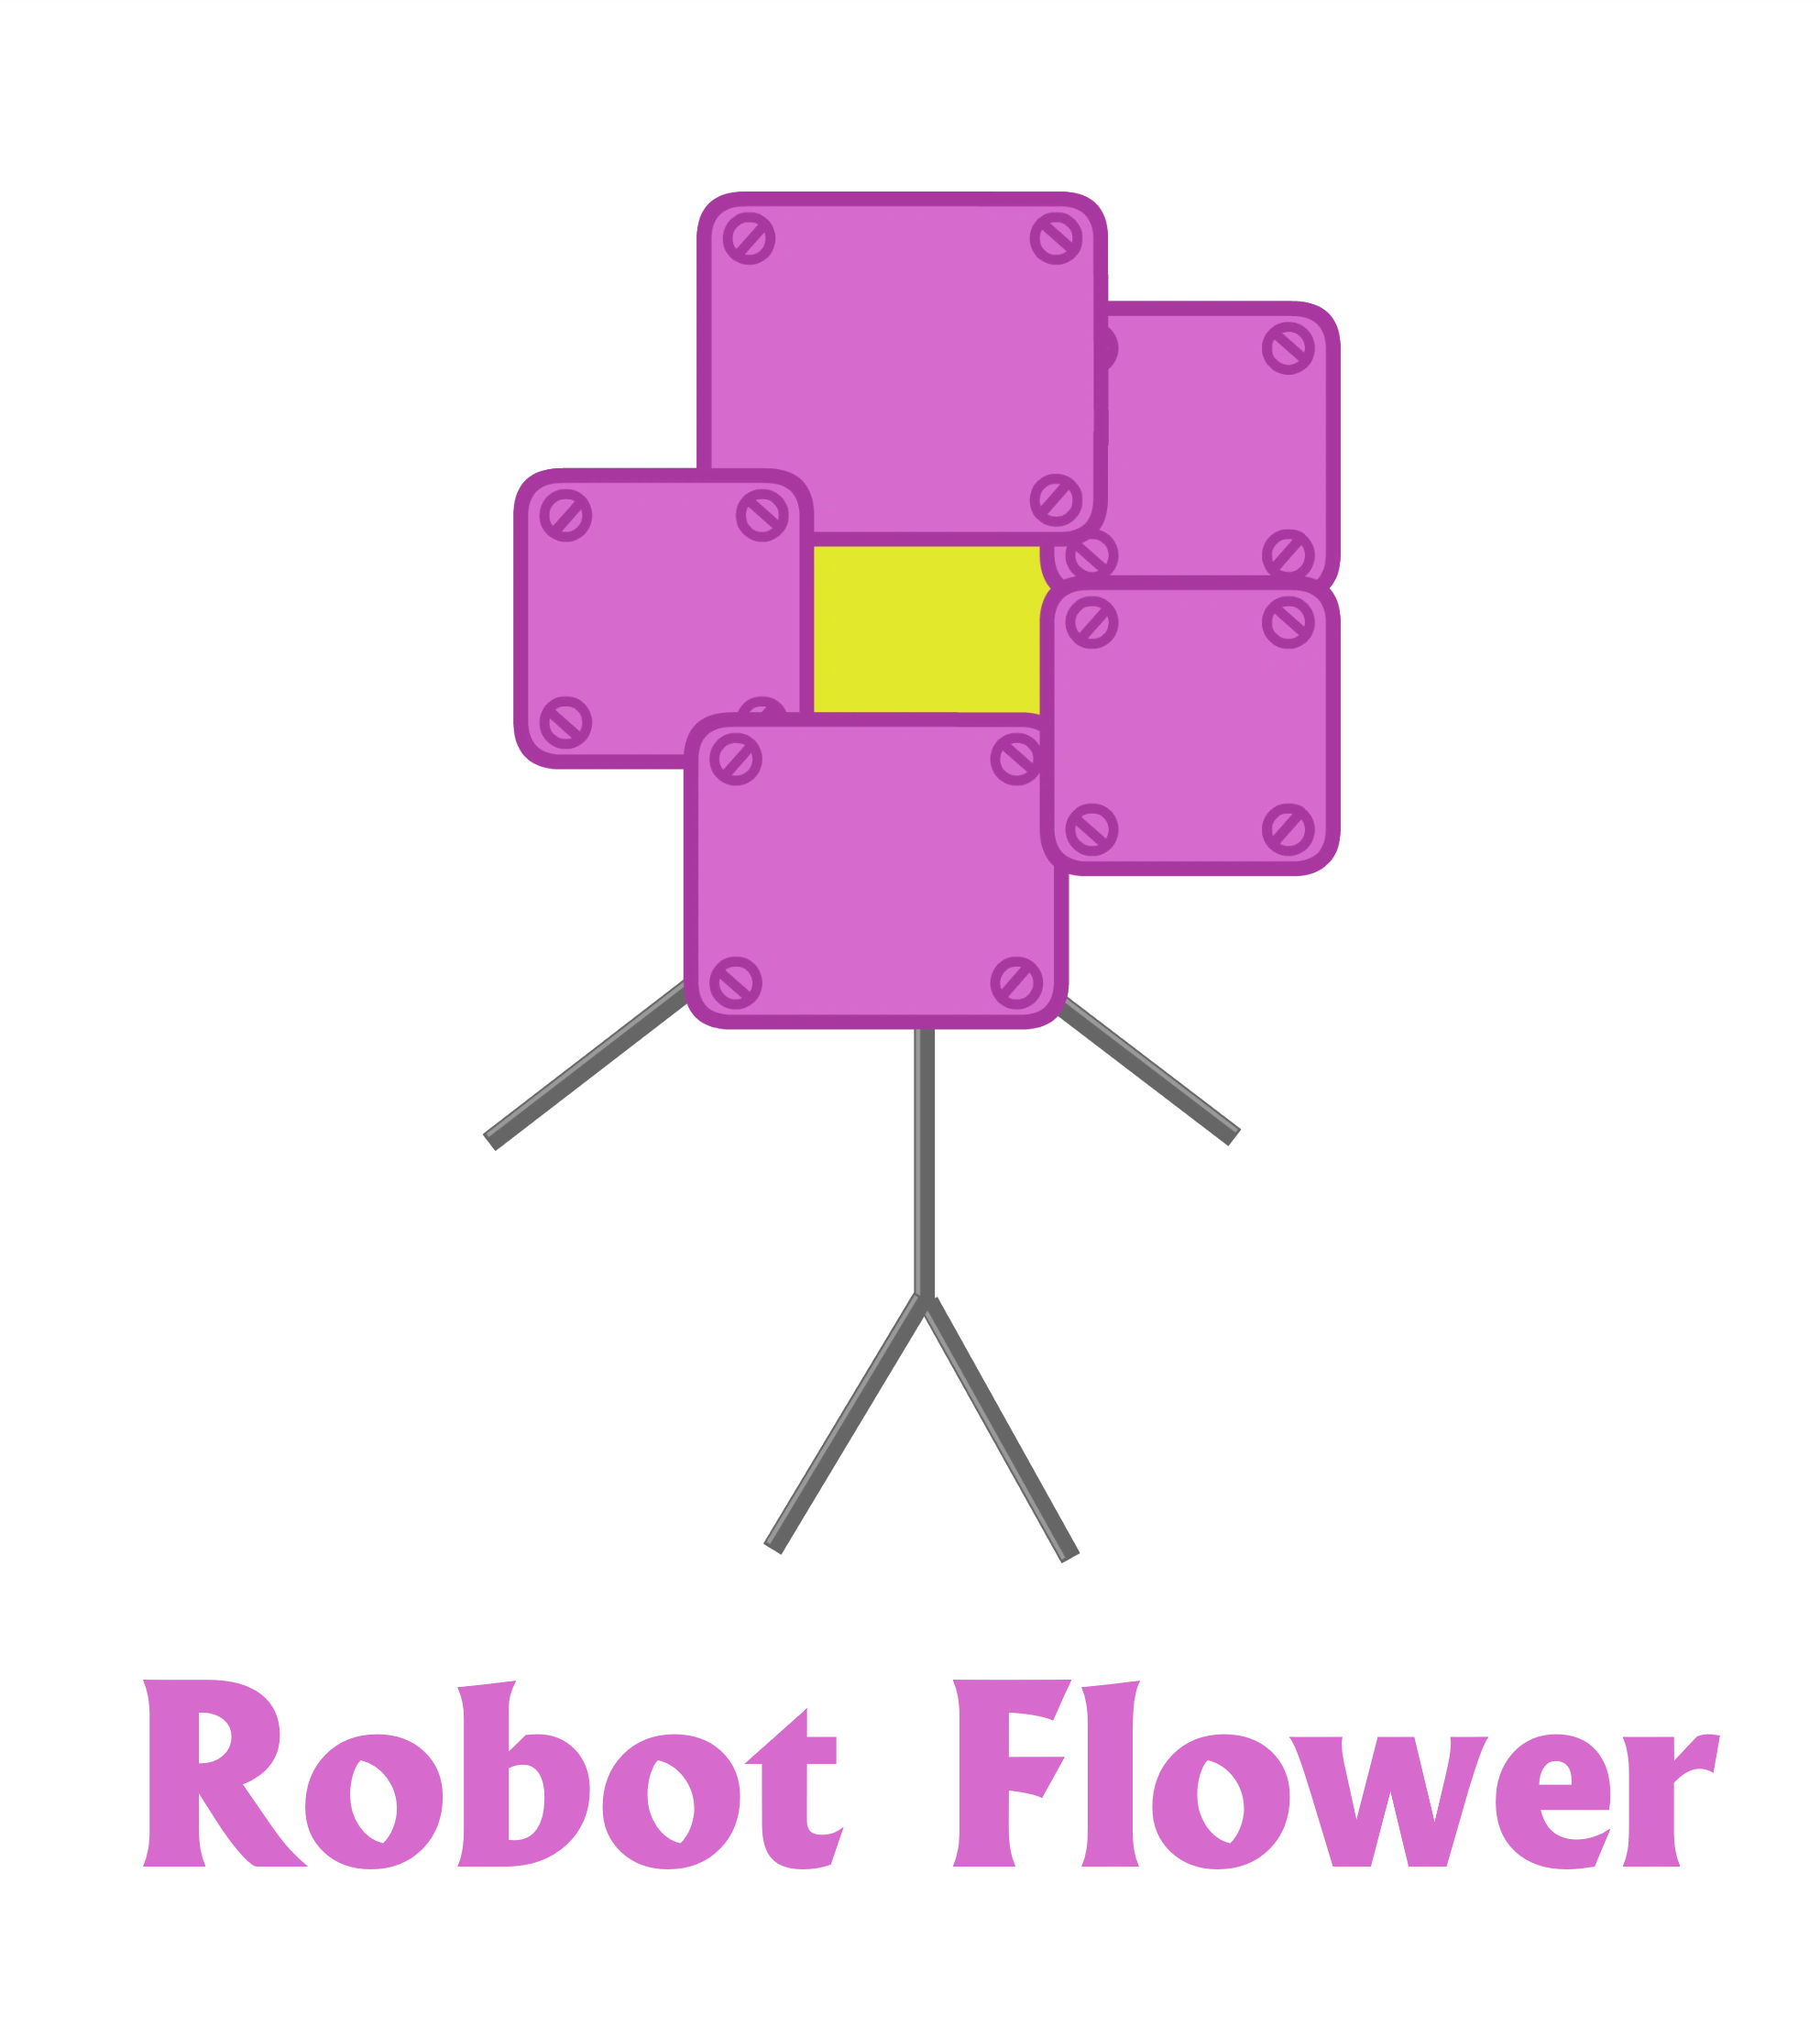 Robot Flower (v2) by lukesamsthesecond on